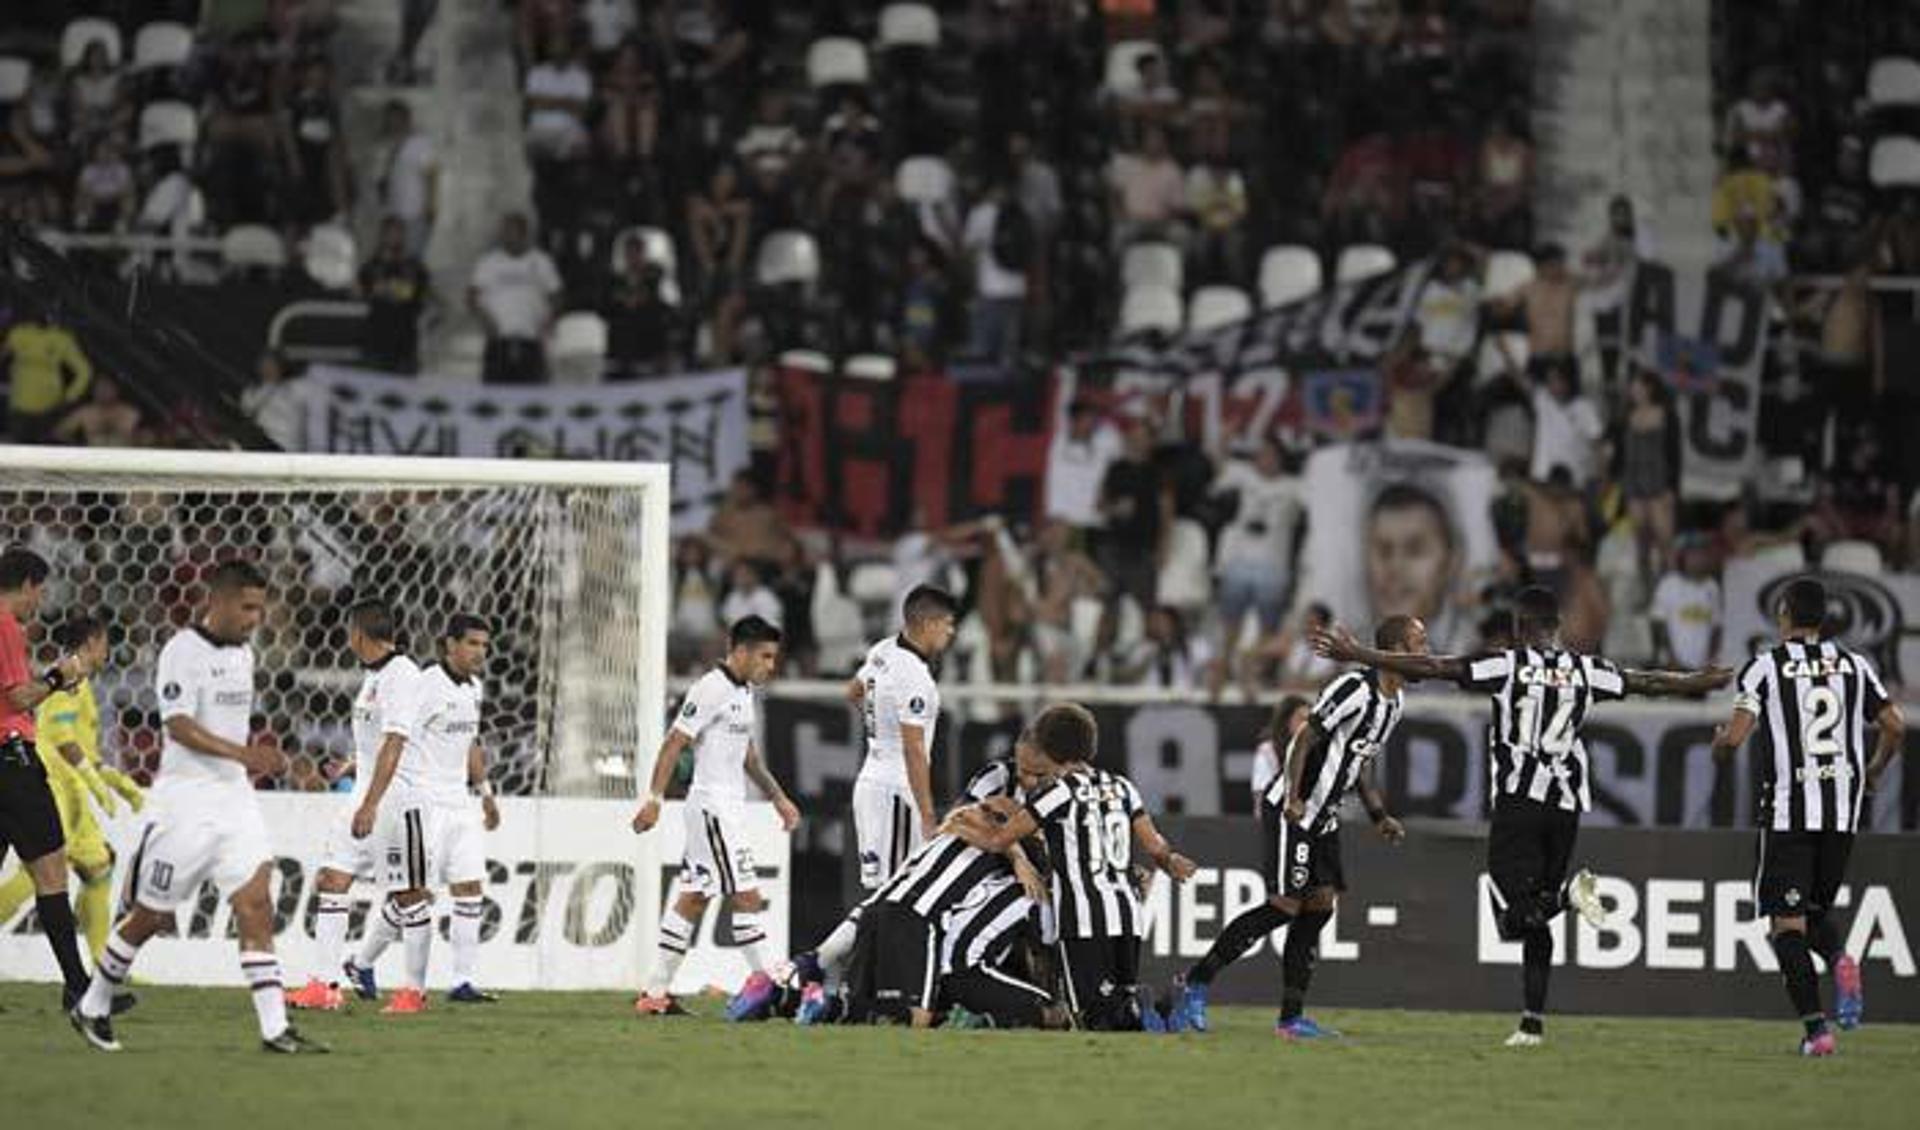 O Botafogo começou o ano pressionando por ter que disputar a pré-Libertadores. No primeiro mata-mata venceu o Colo-Colo em casa por 2 a 1 e garantiu empate por 1 a 1 no Chile, graças a um gol de Rodrigo Pimpão